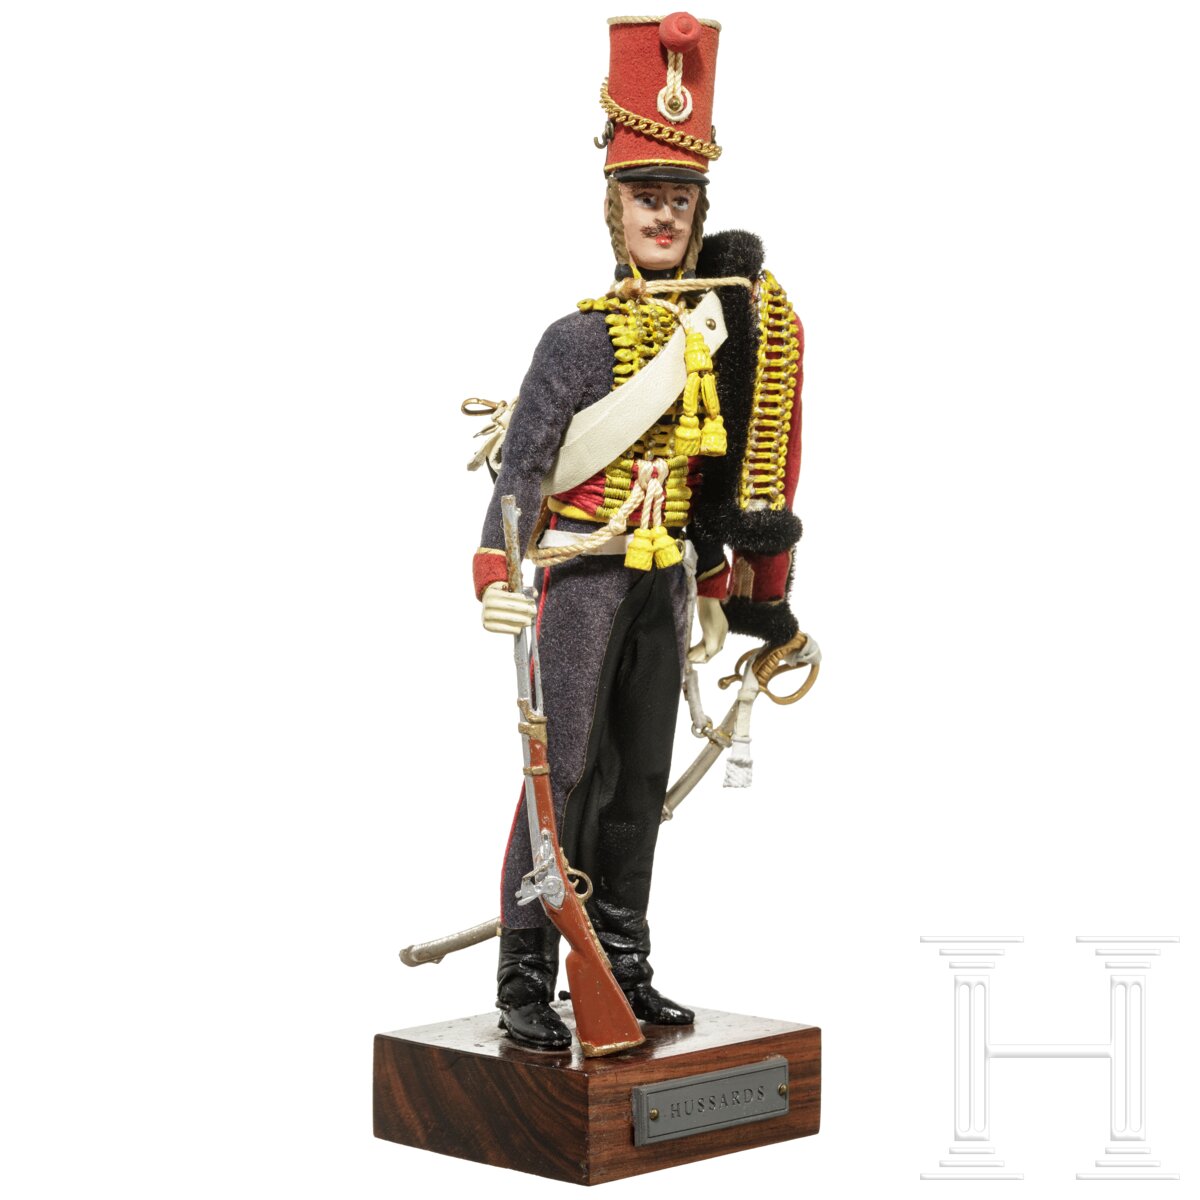 Husar um 1815 - Uniformfigur von Marcel Riffet, 20. Jhdt. - Image 2 of 6